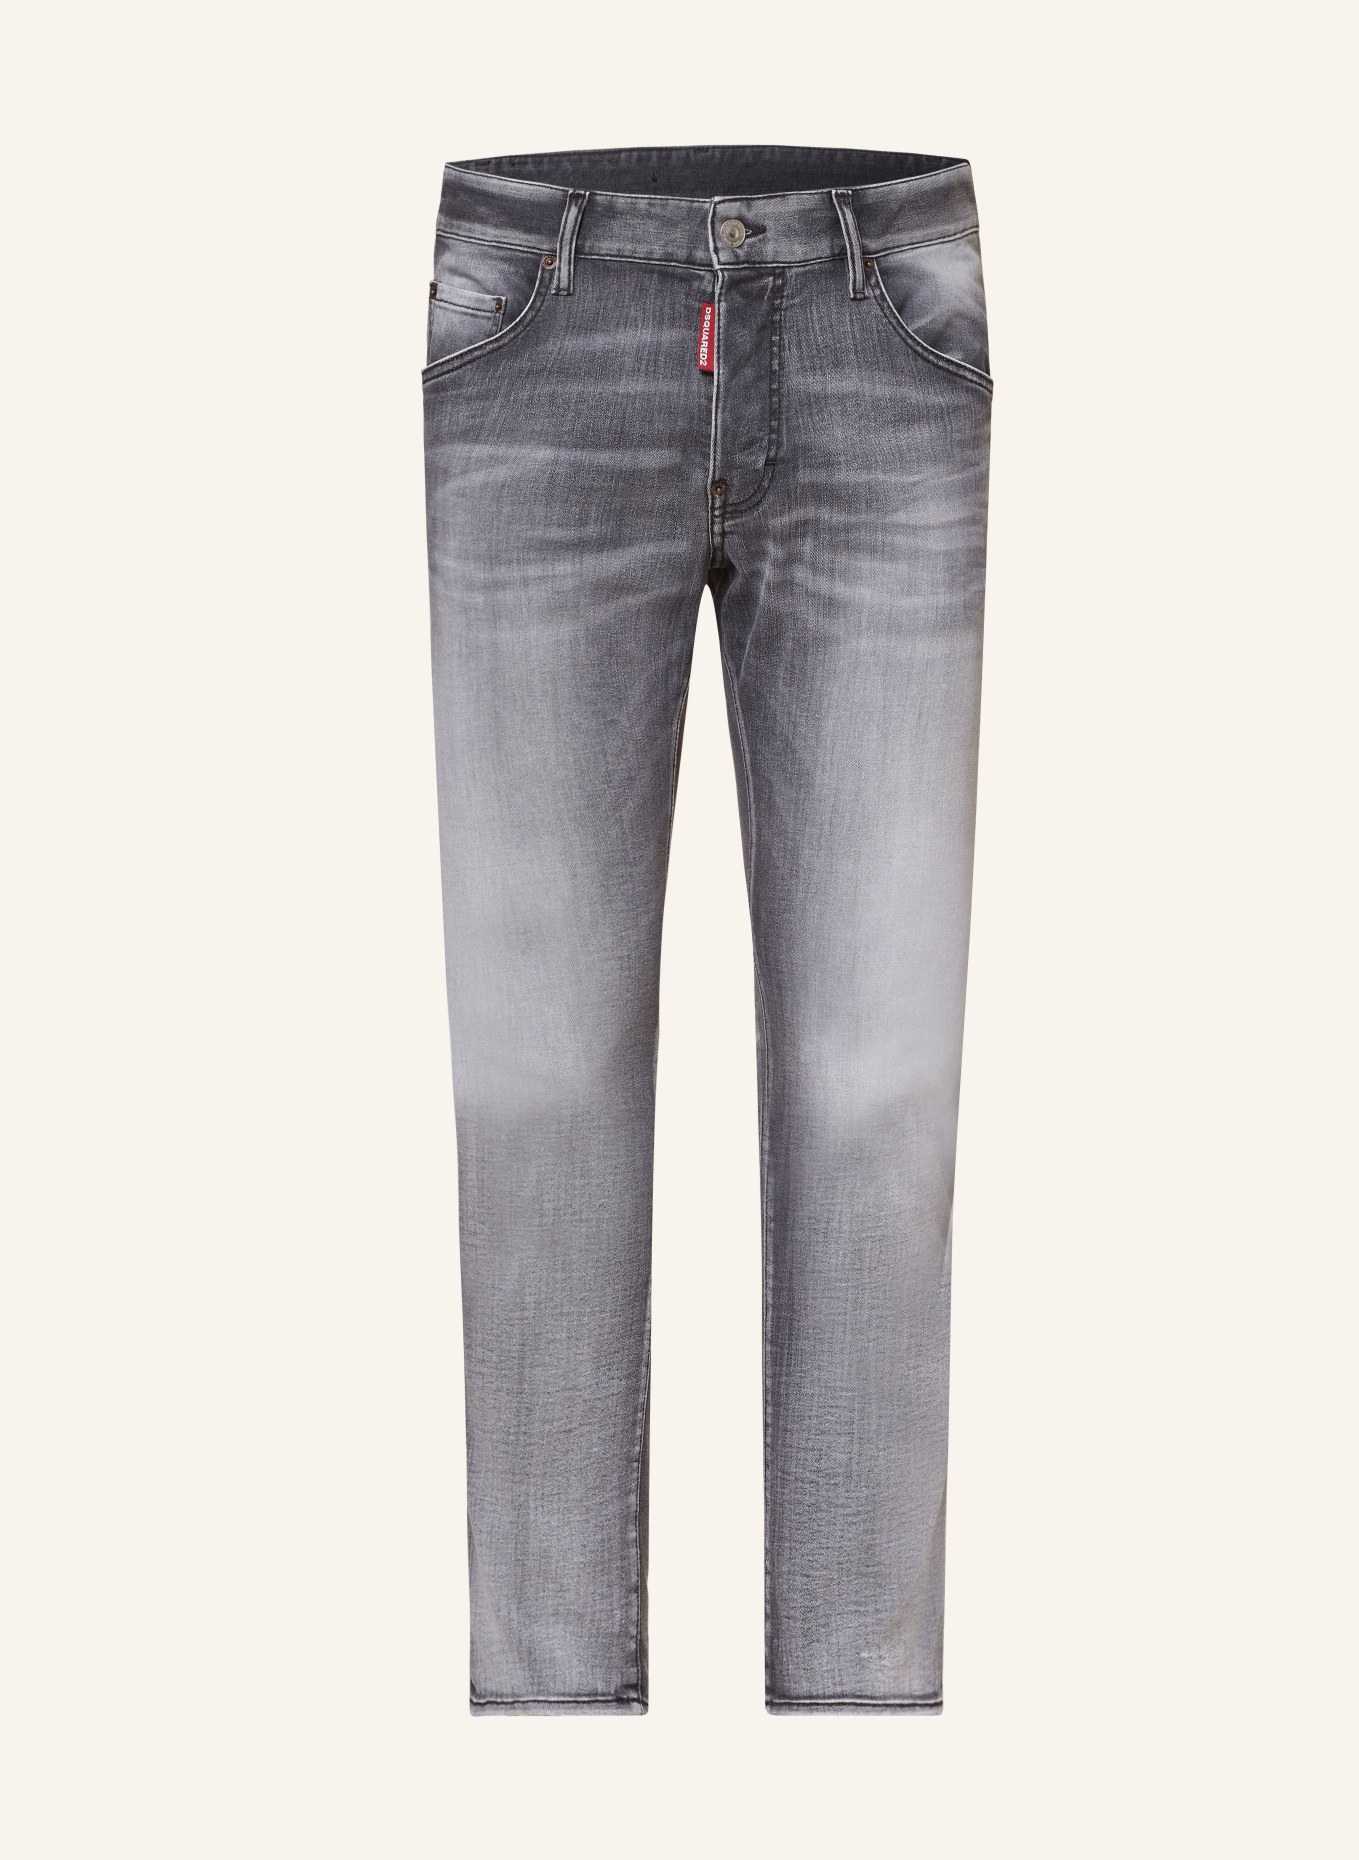 DSQUARED2 Jeans SKATER Slim Fit, Farbe: 900 BLACK (Bild 1)